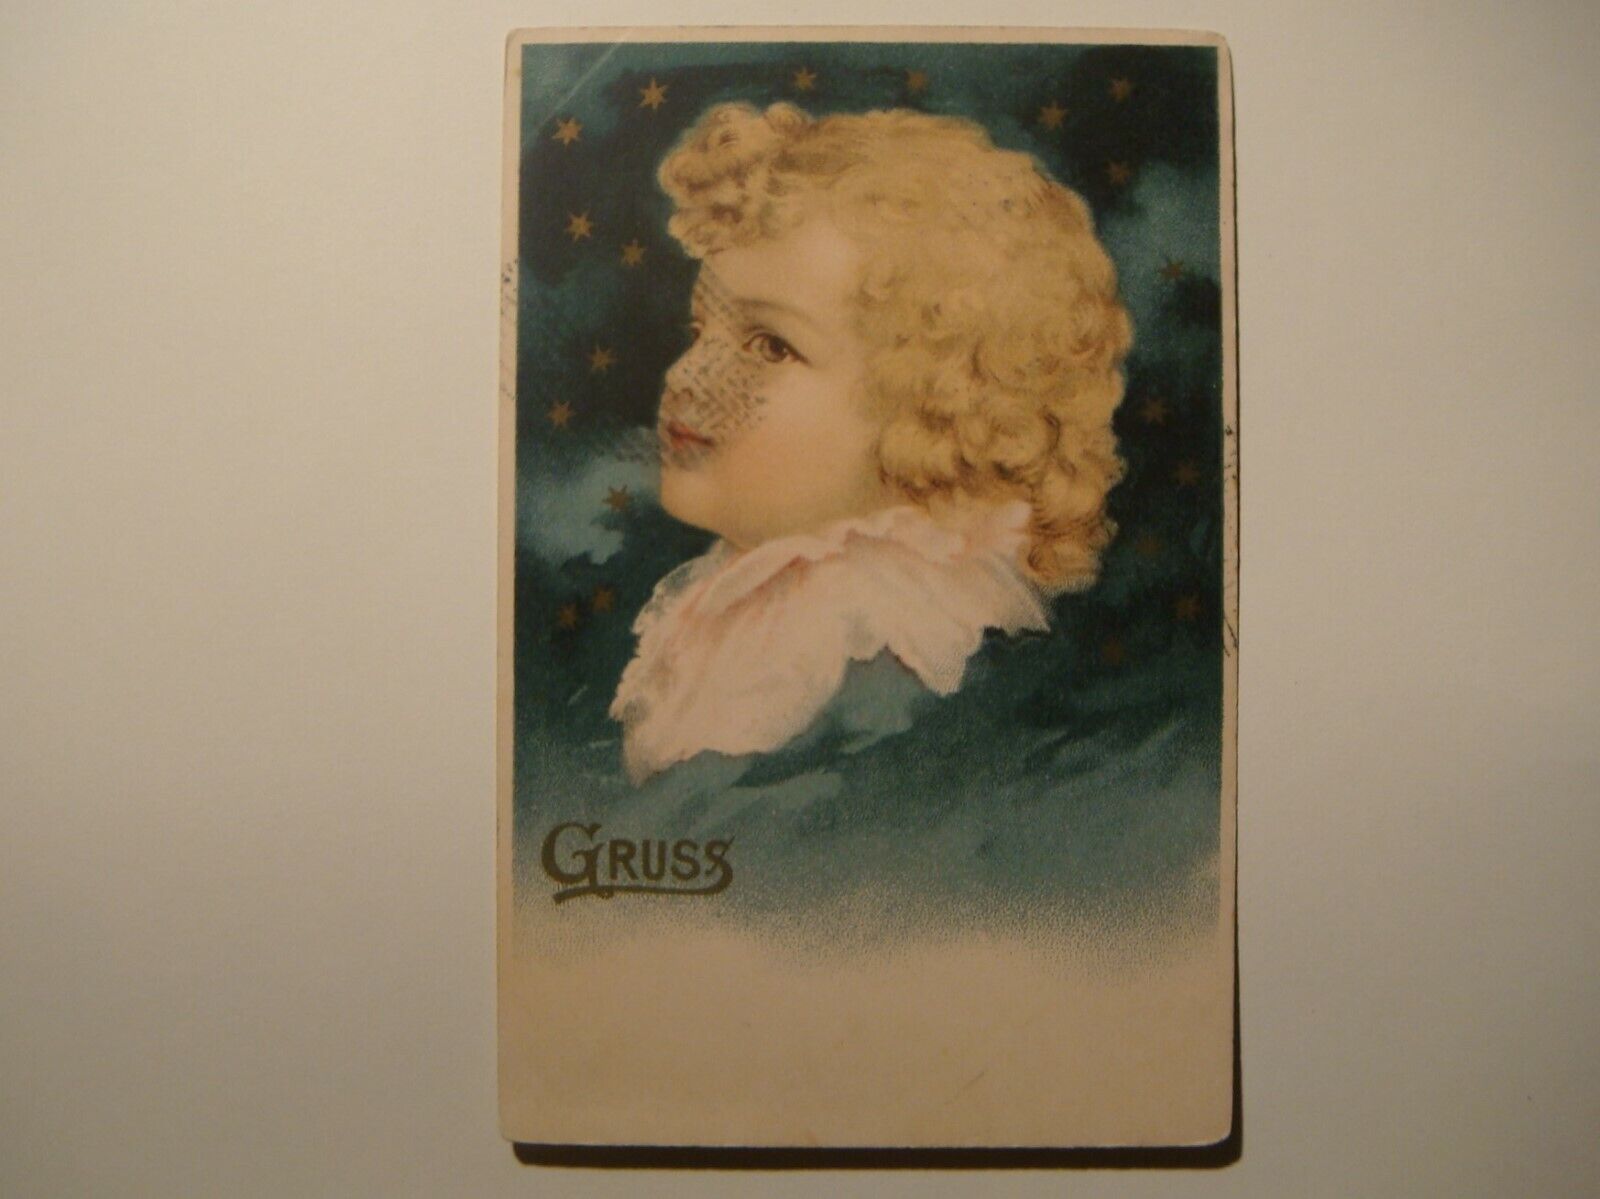 Blonde boy.Gruss.1899.Karlsbad,Austria.